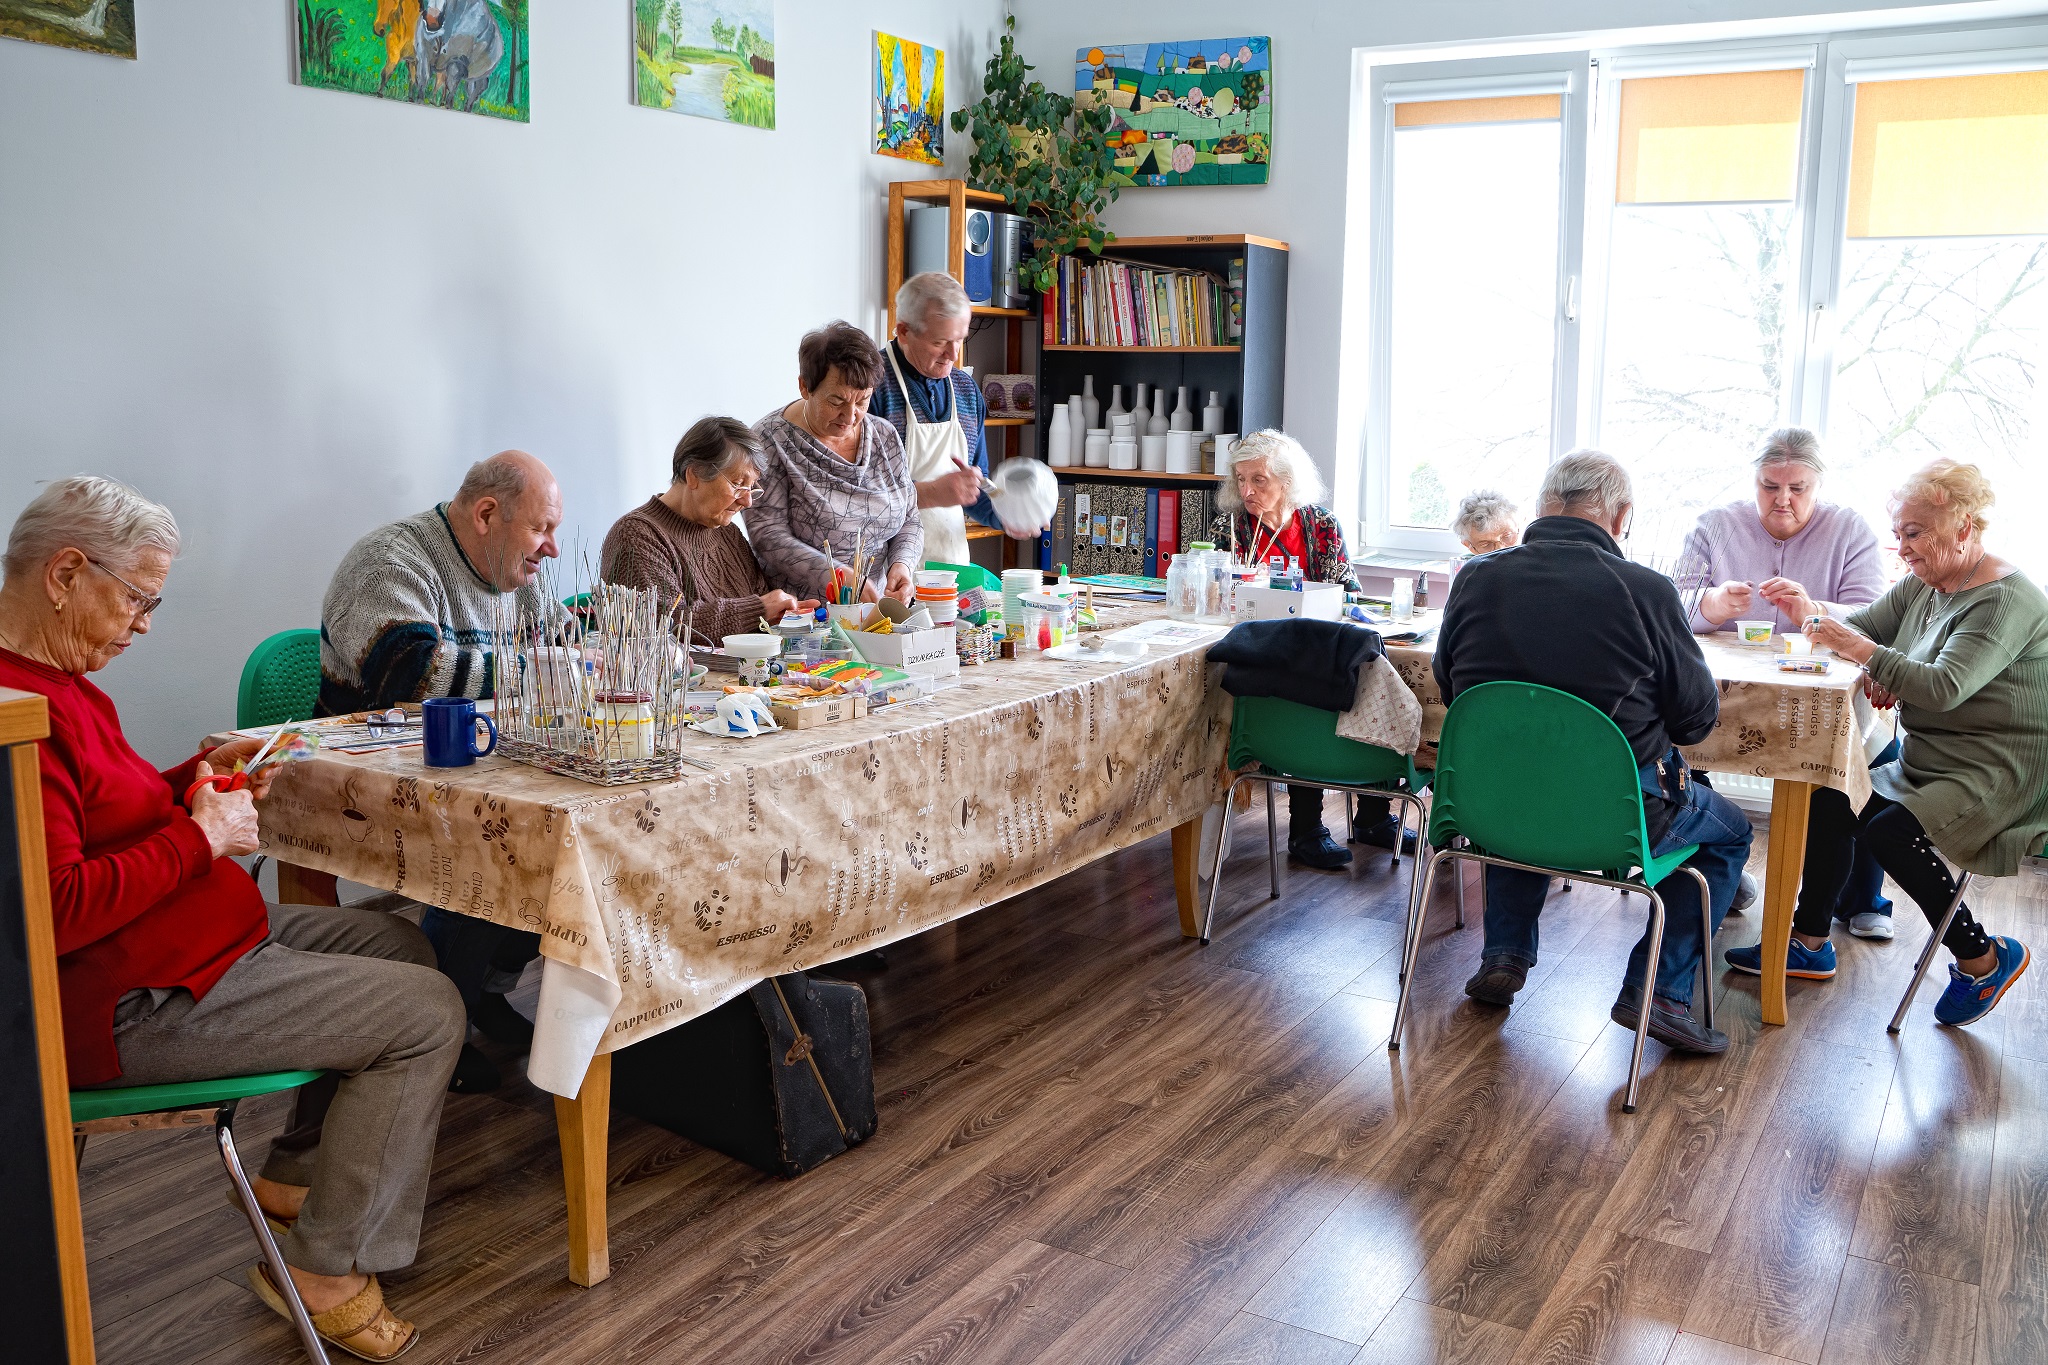 Na zdjęciu widać seniorów przy stole w kształcie litery L wykonujących ozdoby.